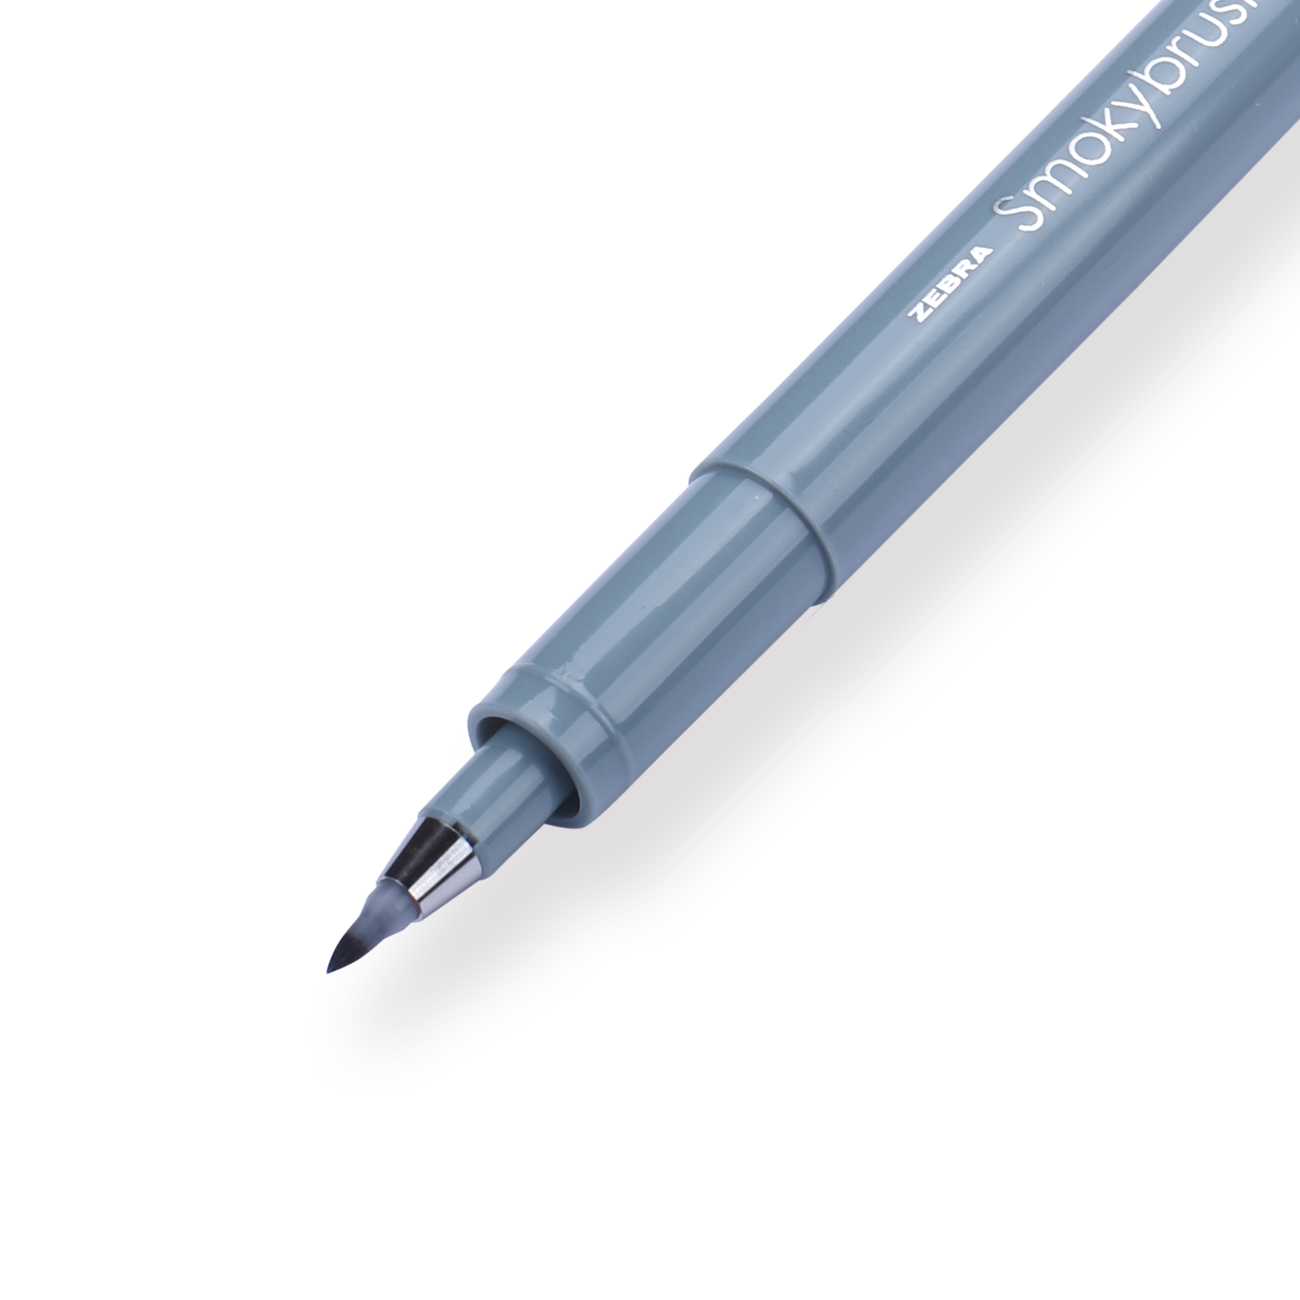 Zebra Smoky Brush Pen - Set of 5 - A — Stationery Pal